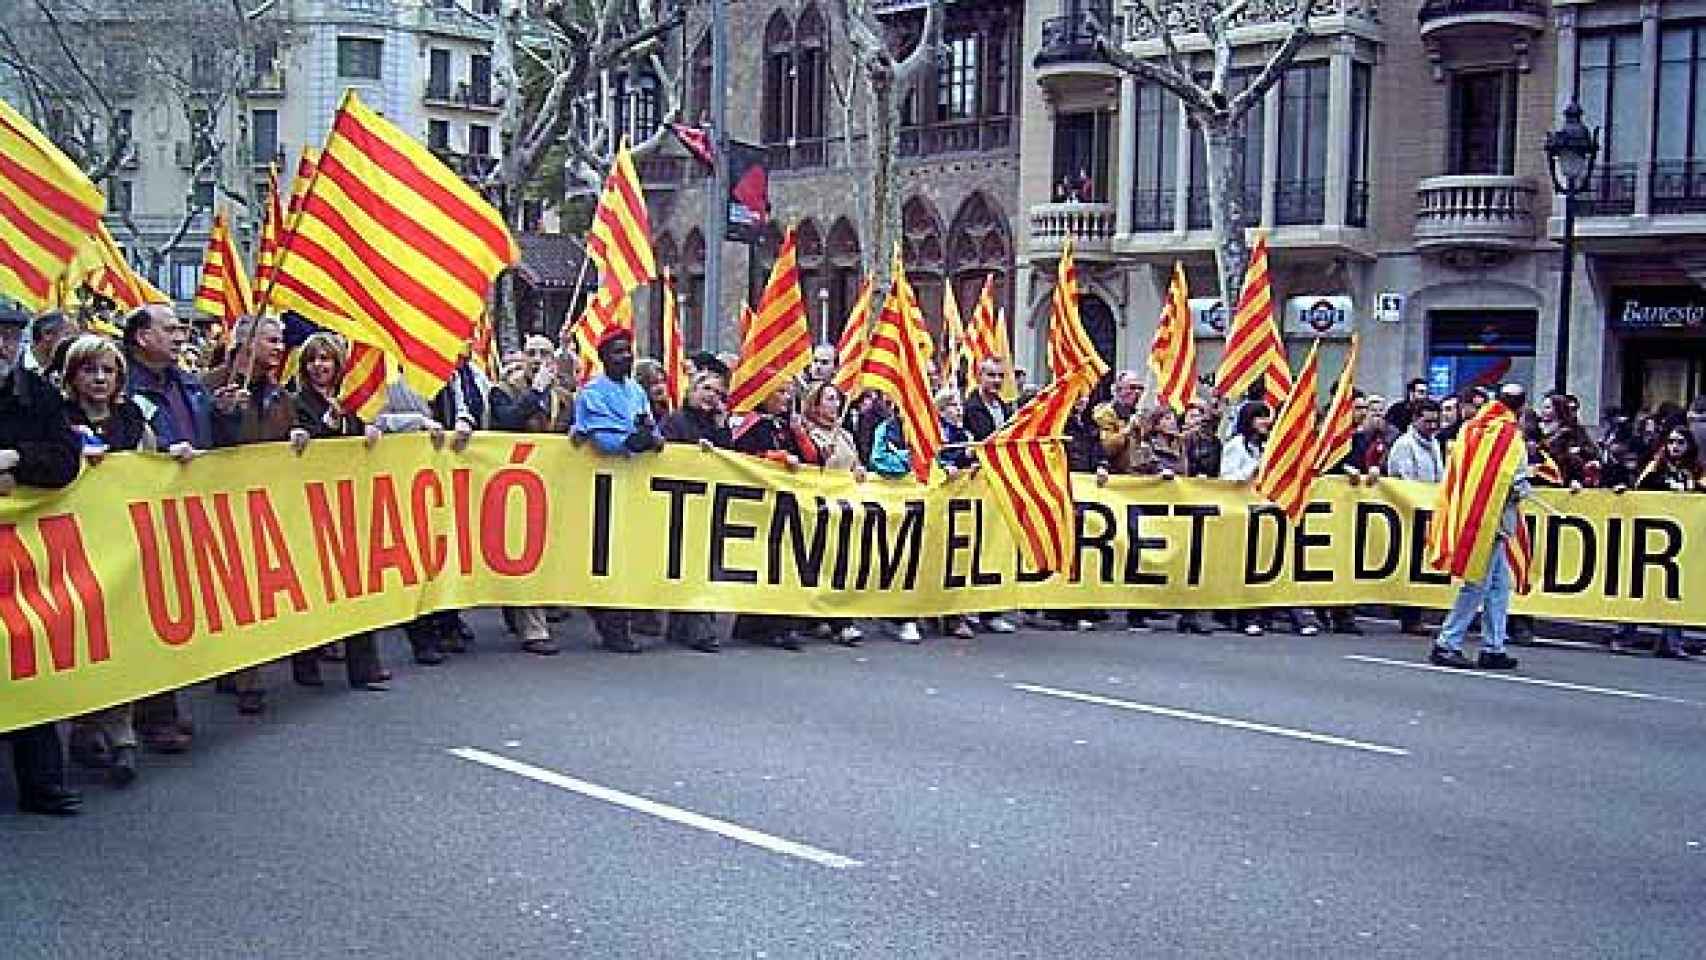 Manifestación por el derecho a decidir celebrada en Barcelona el 18 de febrero de 2006